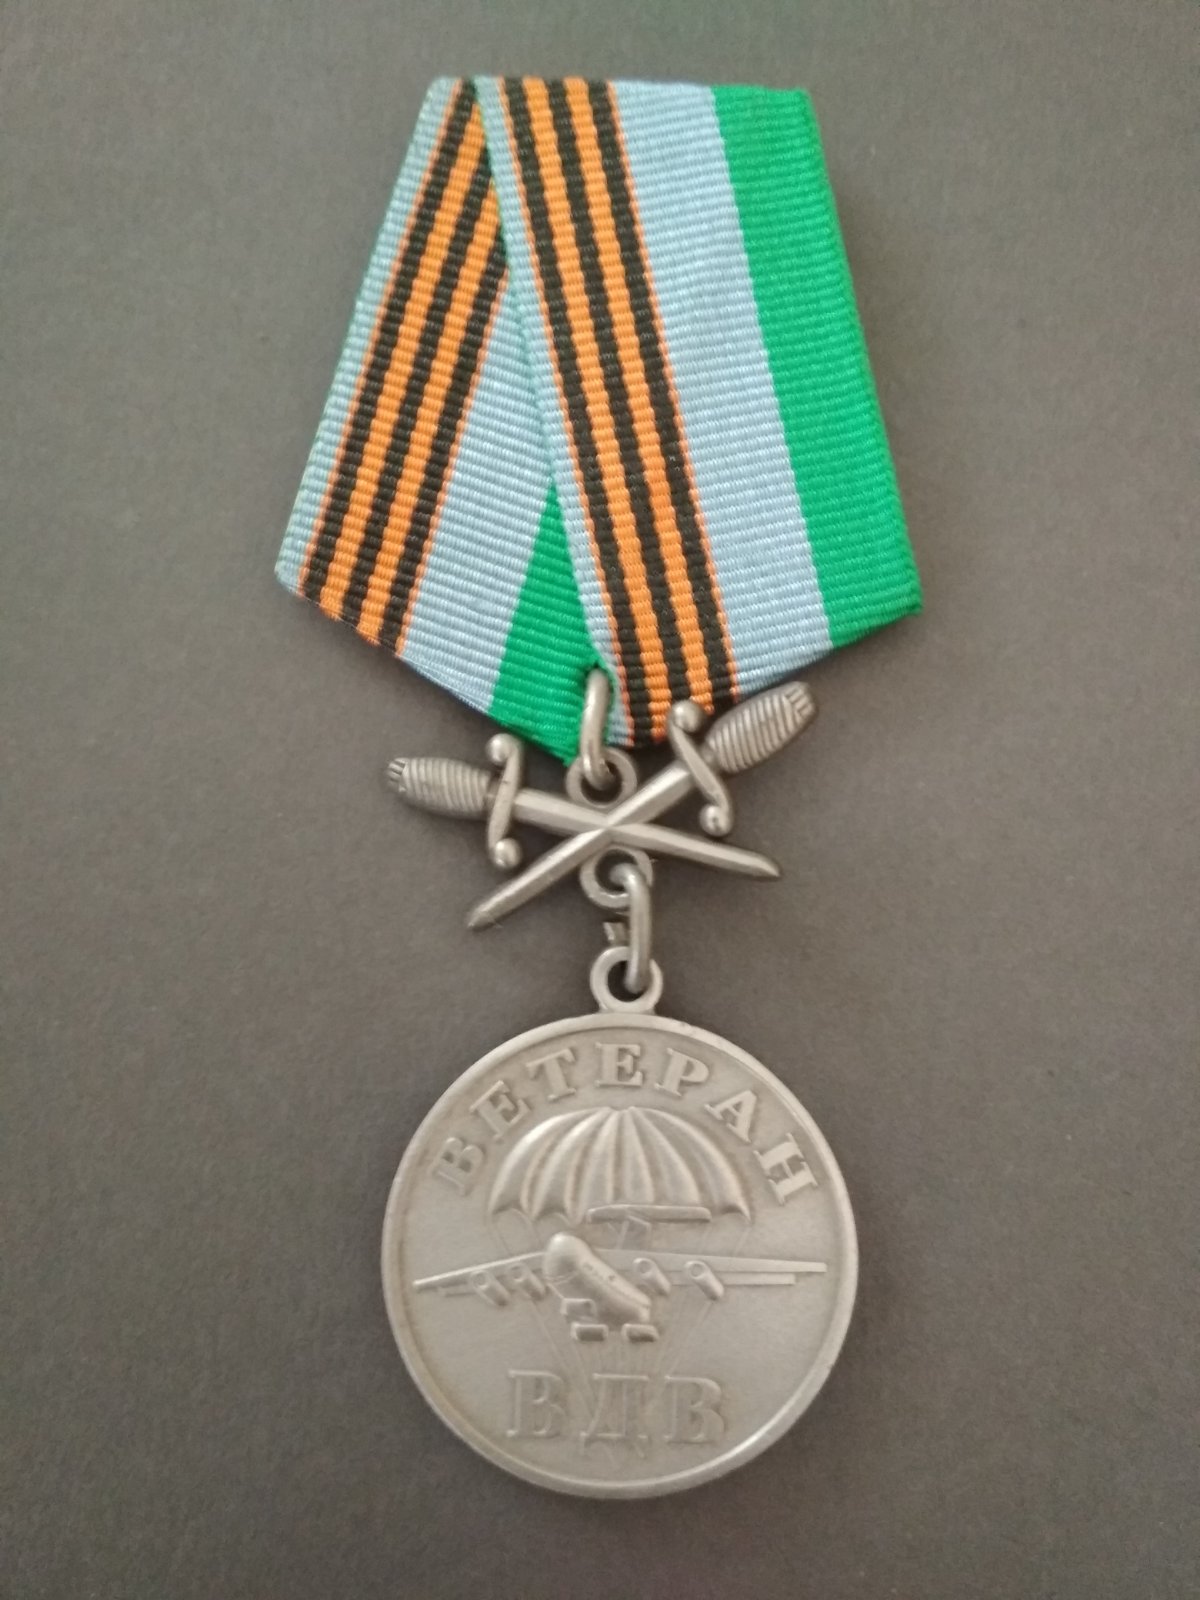 Медаль "Ветеран ВДВ". Серебристая, с мечами.